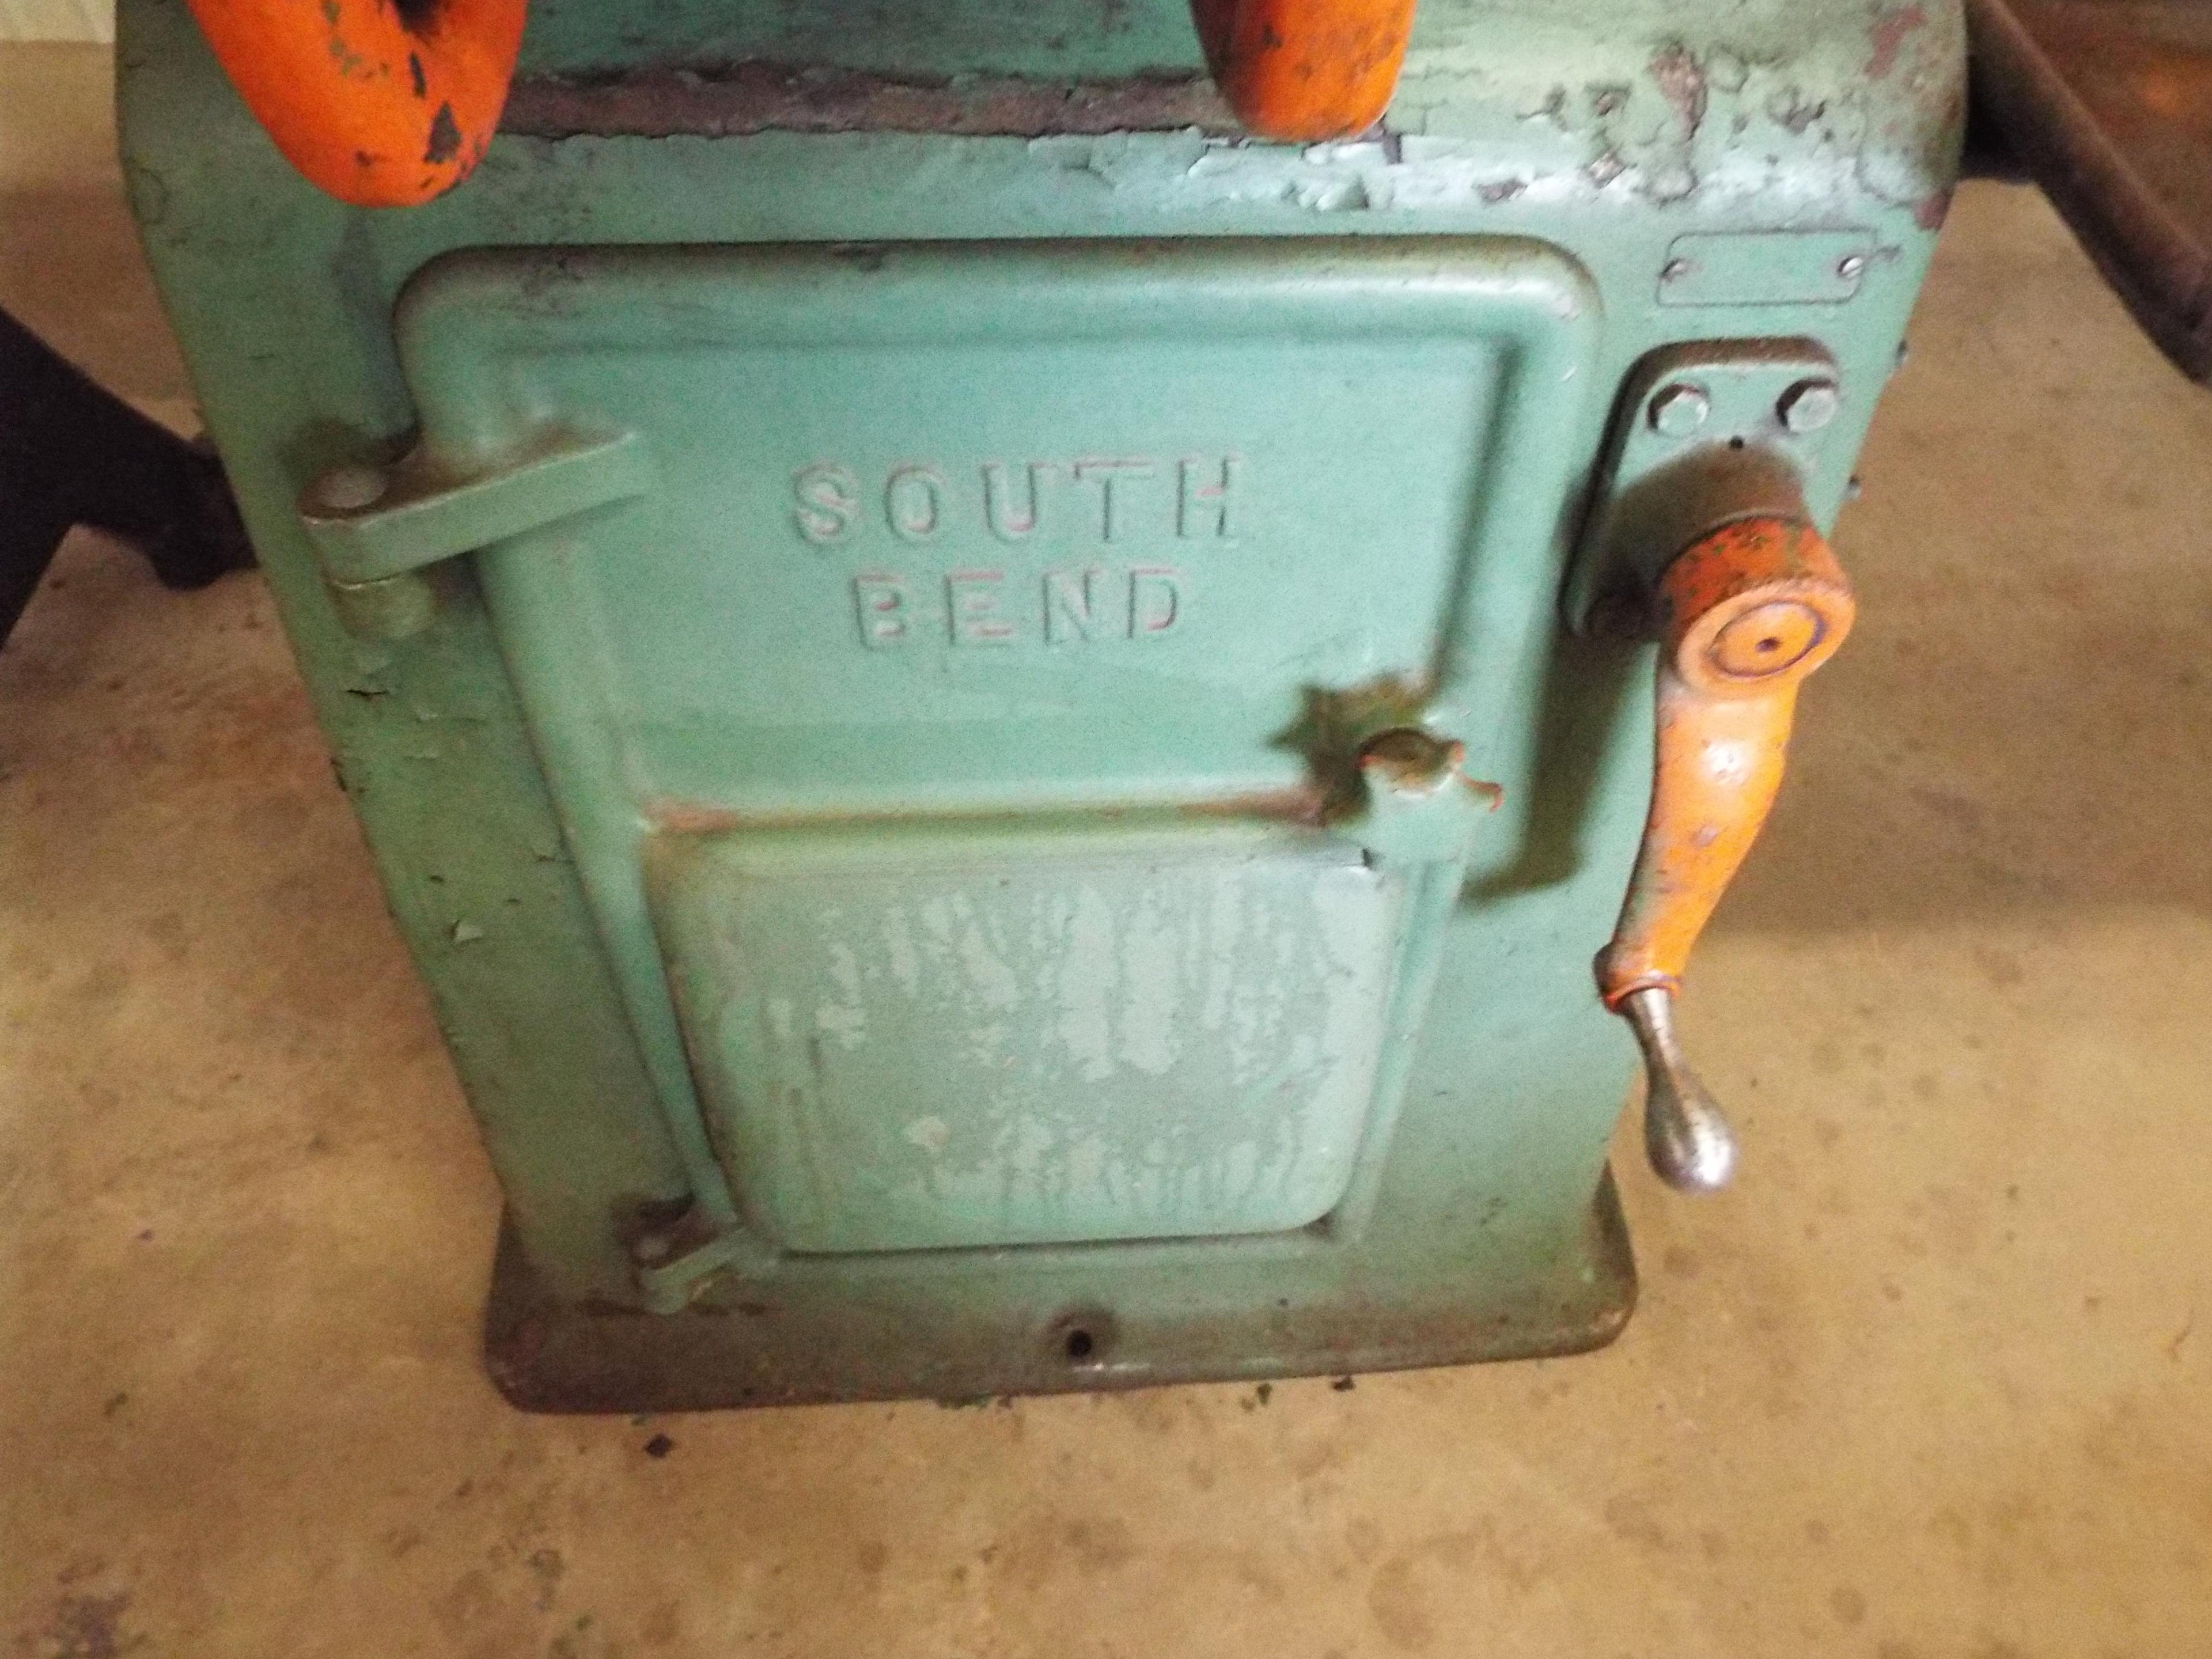 South Bend CL8145 metal lathe